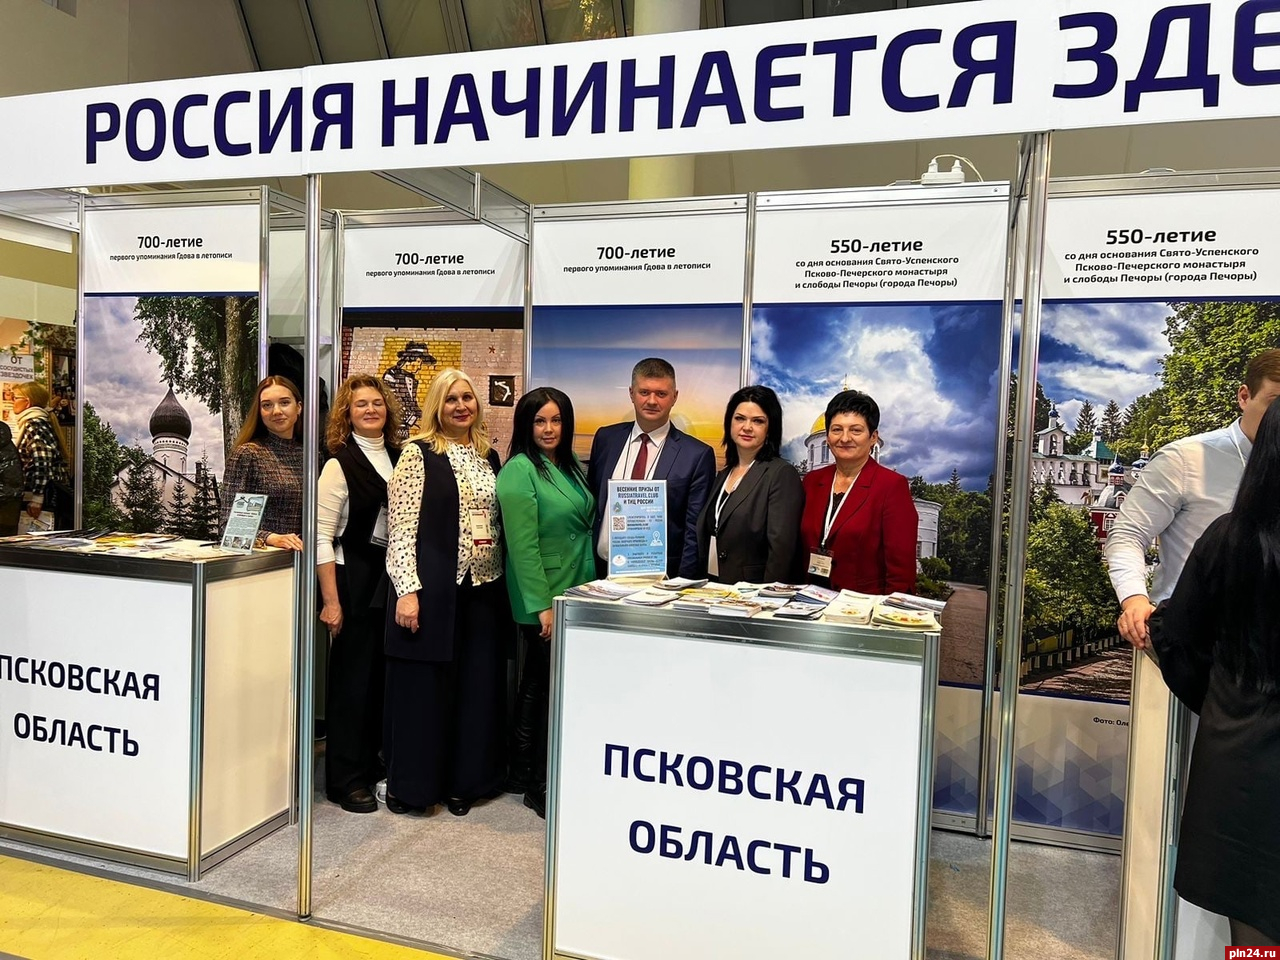 Псковский облсовпроф усилит взаимодействие с комитетом по туризму